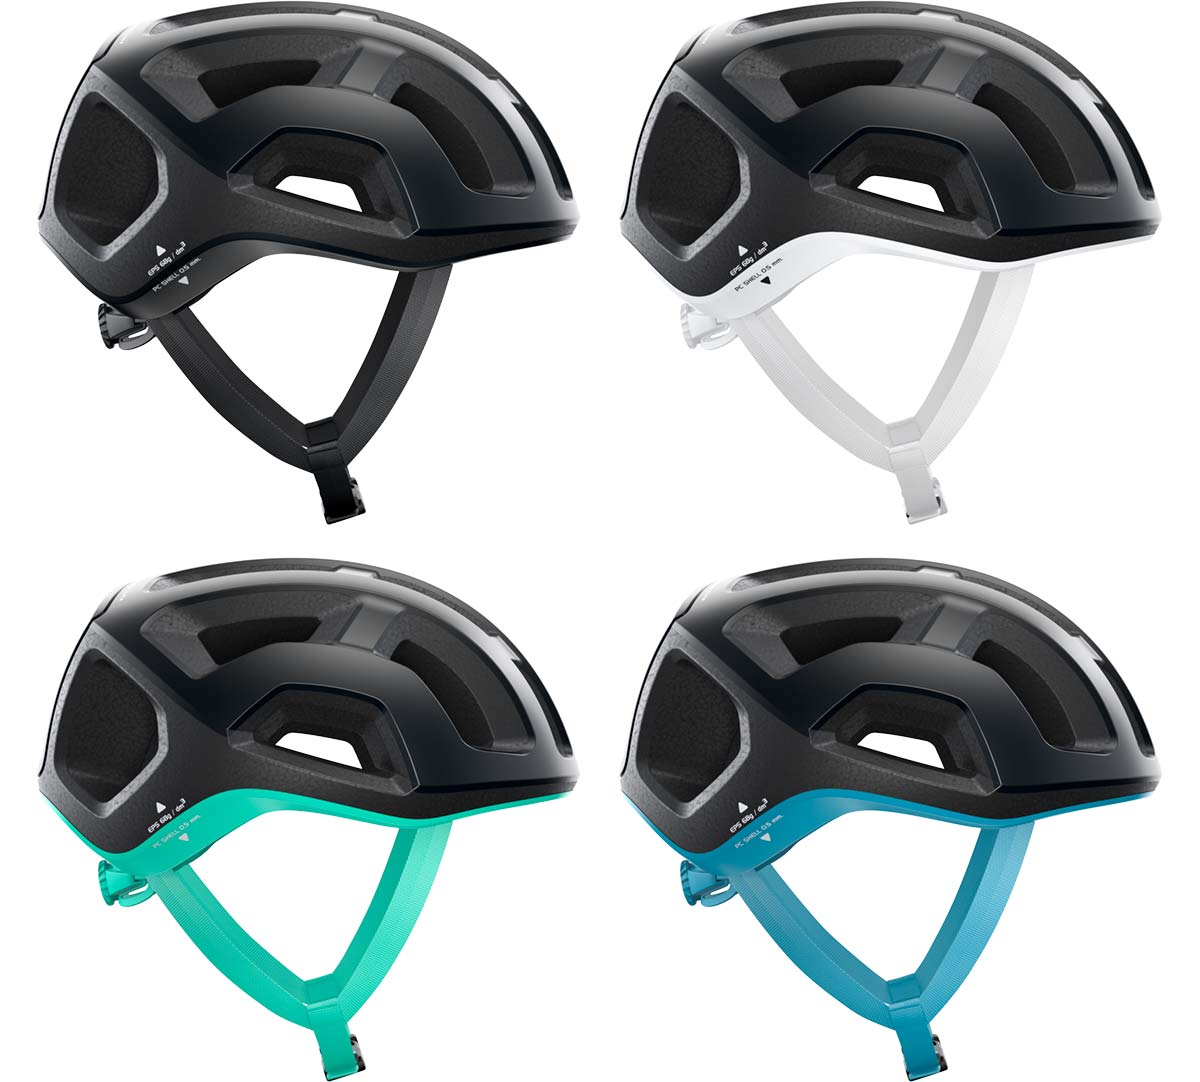 En TodoMountainBike: POC presenta el Ventral Lite, su casco de ciclismo más ligero hasta la fecha